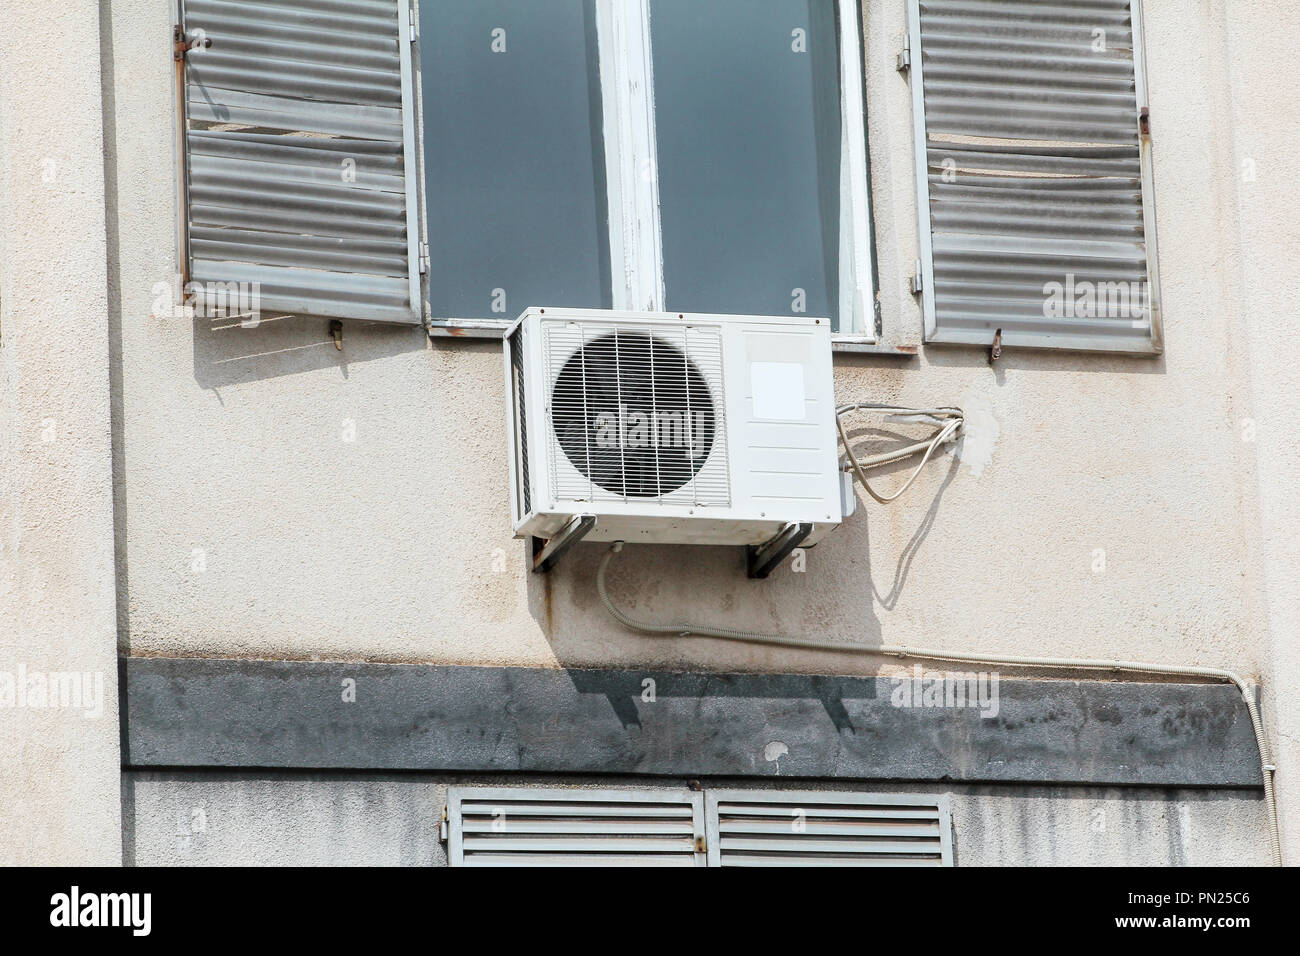 Klimaanlage, äußere Einheit auf der Fassade des alten Gebäudes, in der Nähe.  Fassade eines Hauses mit viel Klimaanlagen Stockfotografie - Alamy